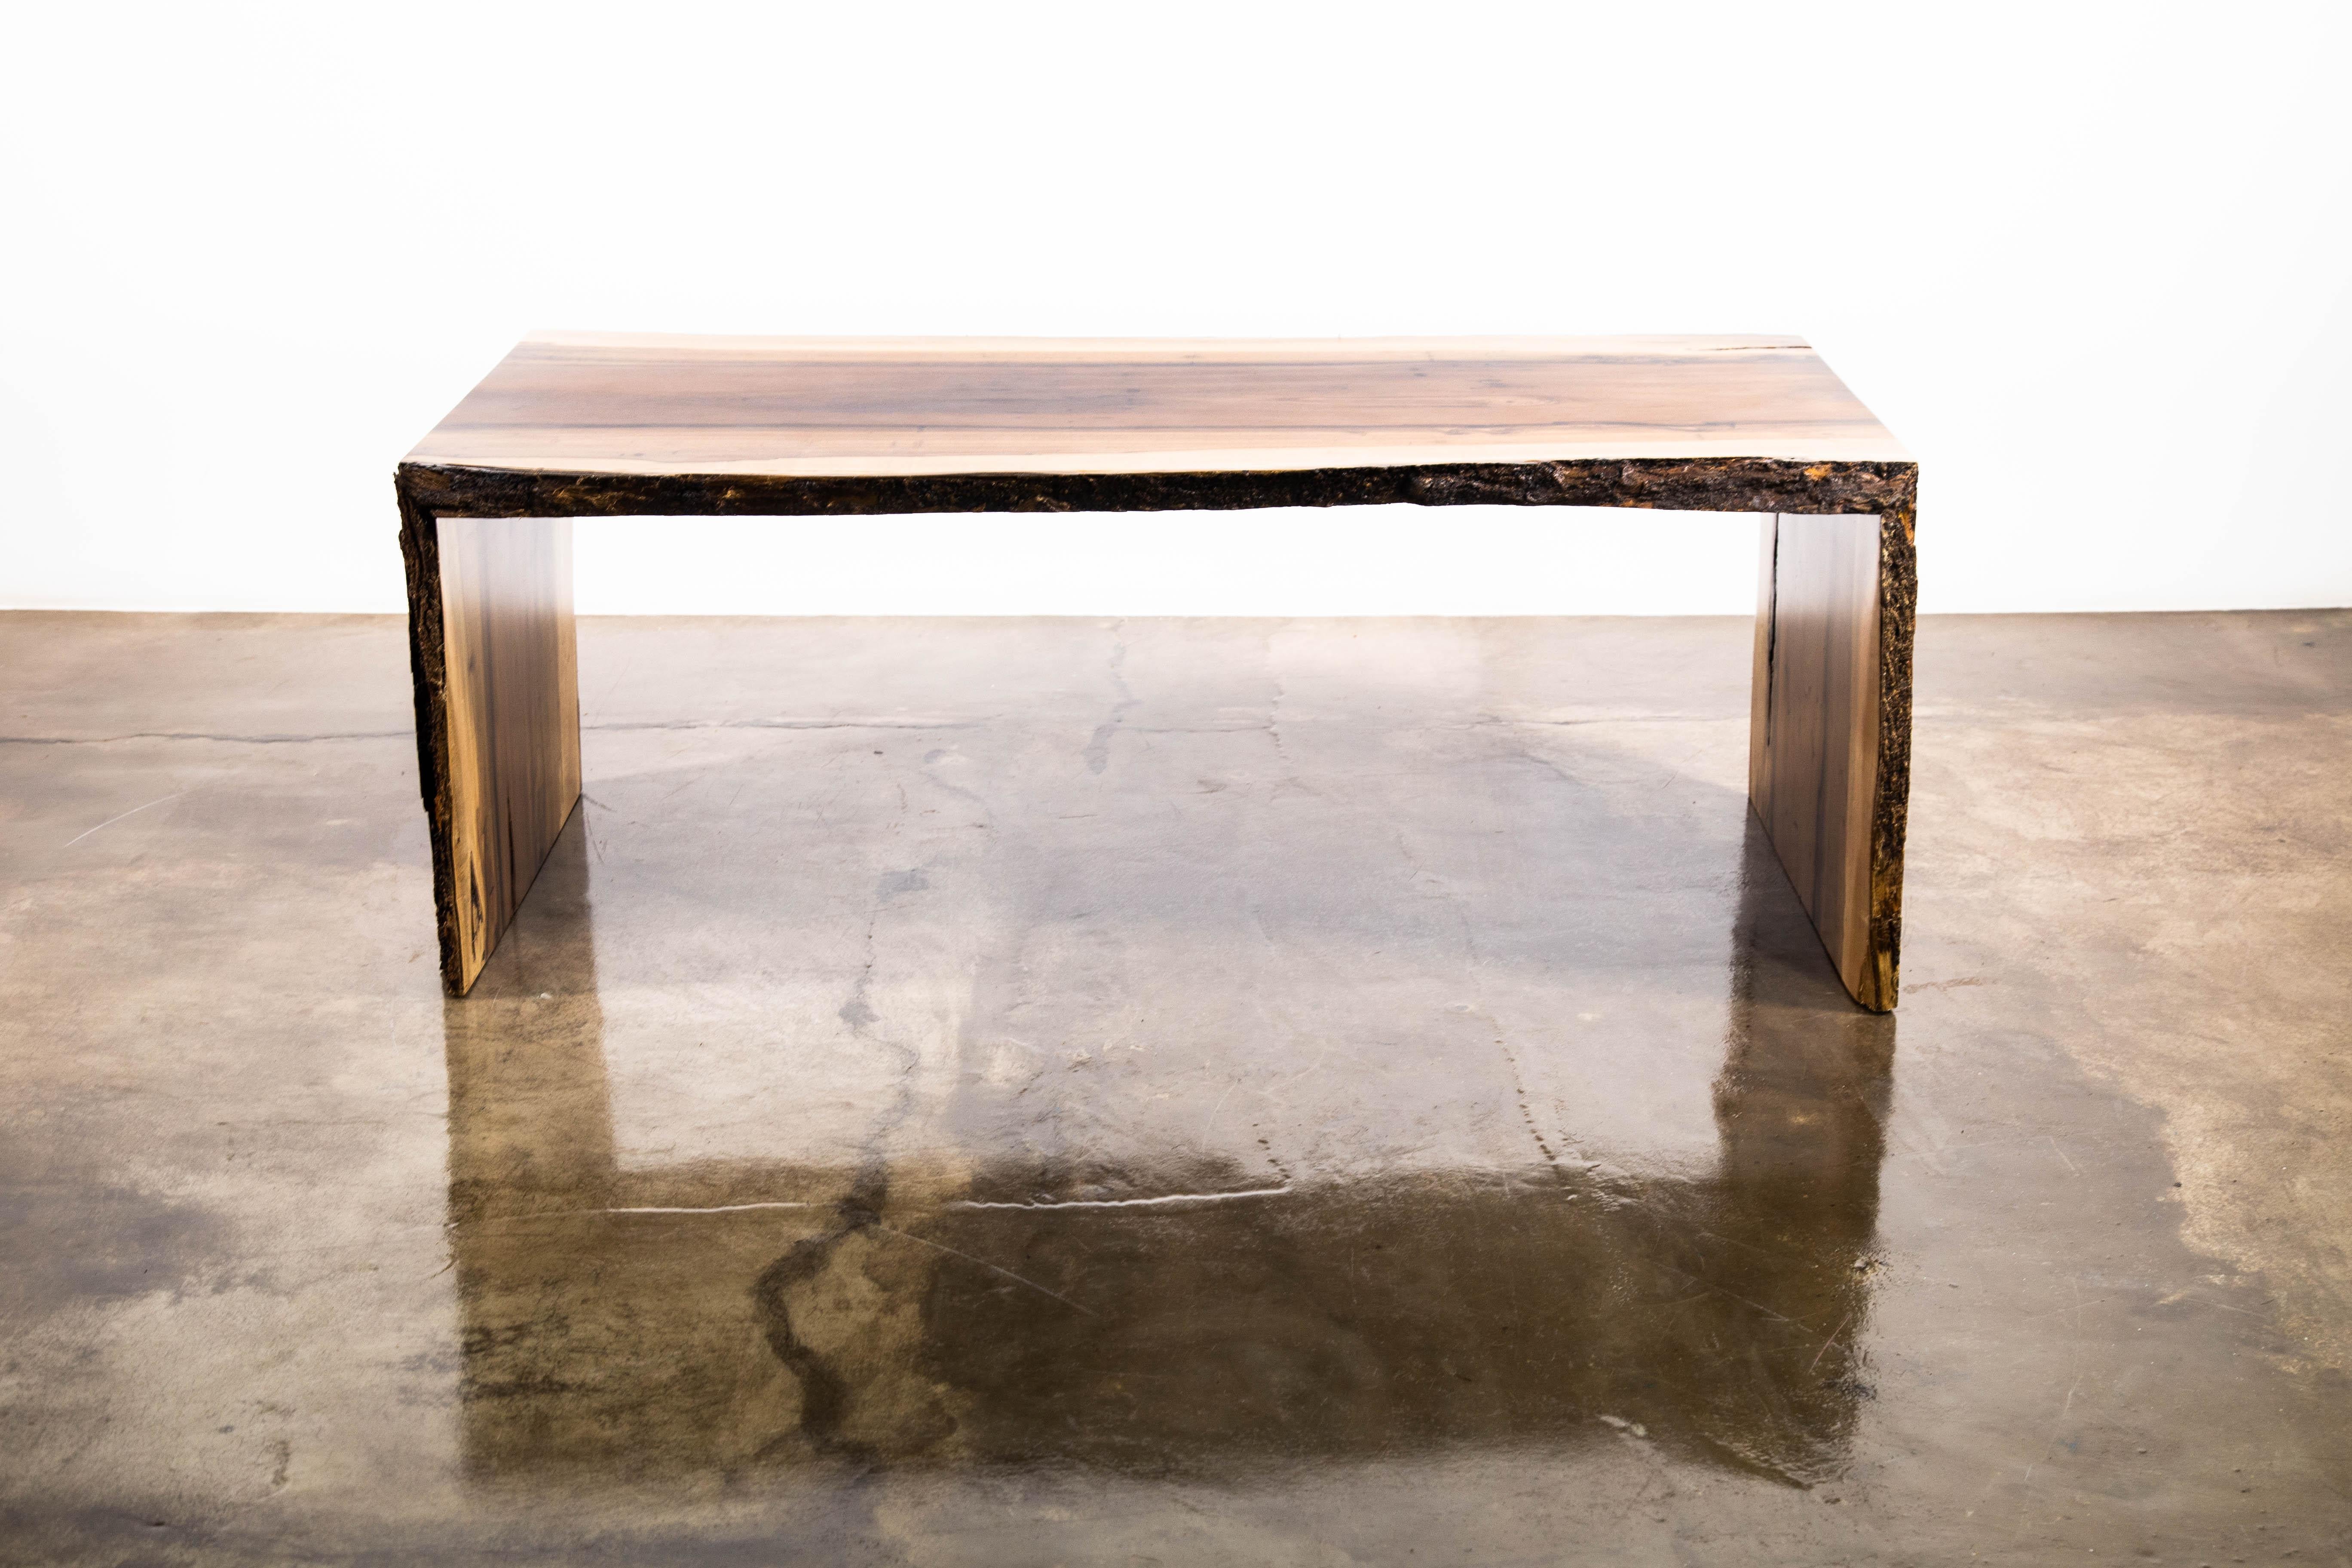 Der Carlo-Tisch ist ein Tisch im Wasserfall-Stil mit lebendiger Kante, der aus massivem argentinischem Palisanderholz mit natürlicher Oberfläche hergestellt wird. Sein minimalistisches Design lässt die Schönheit der Natur in den Mittelpunkt rücken.